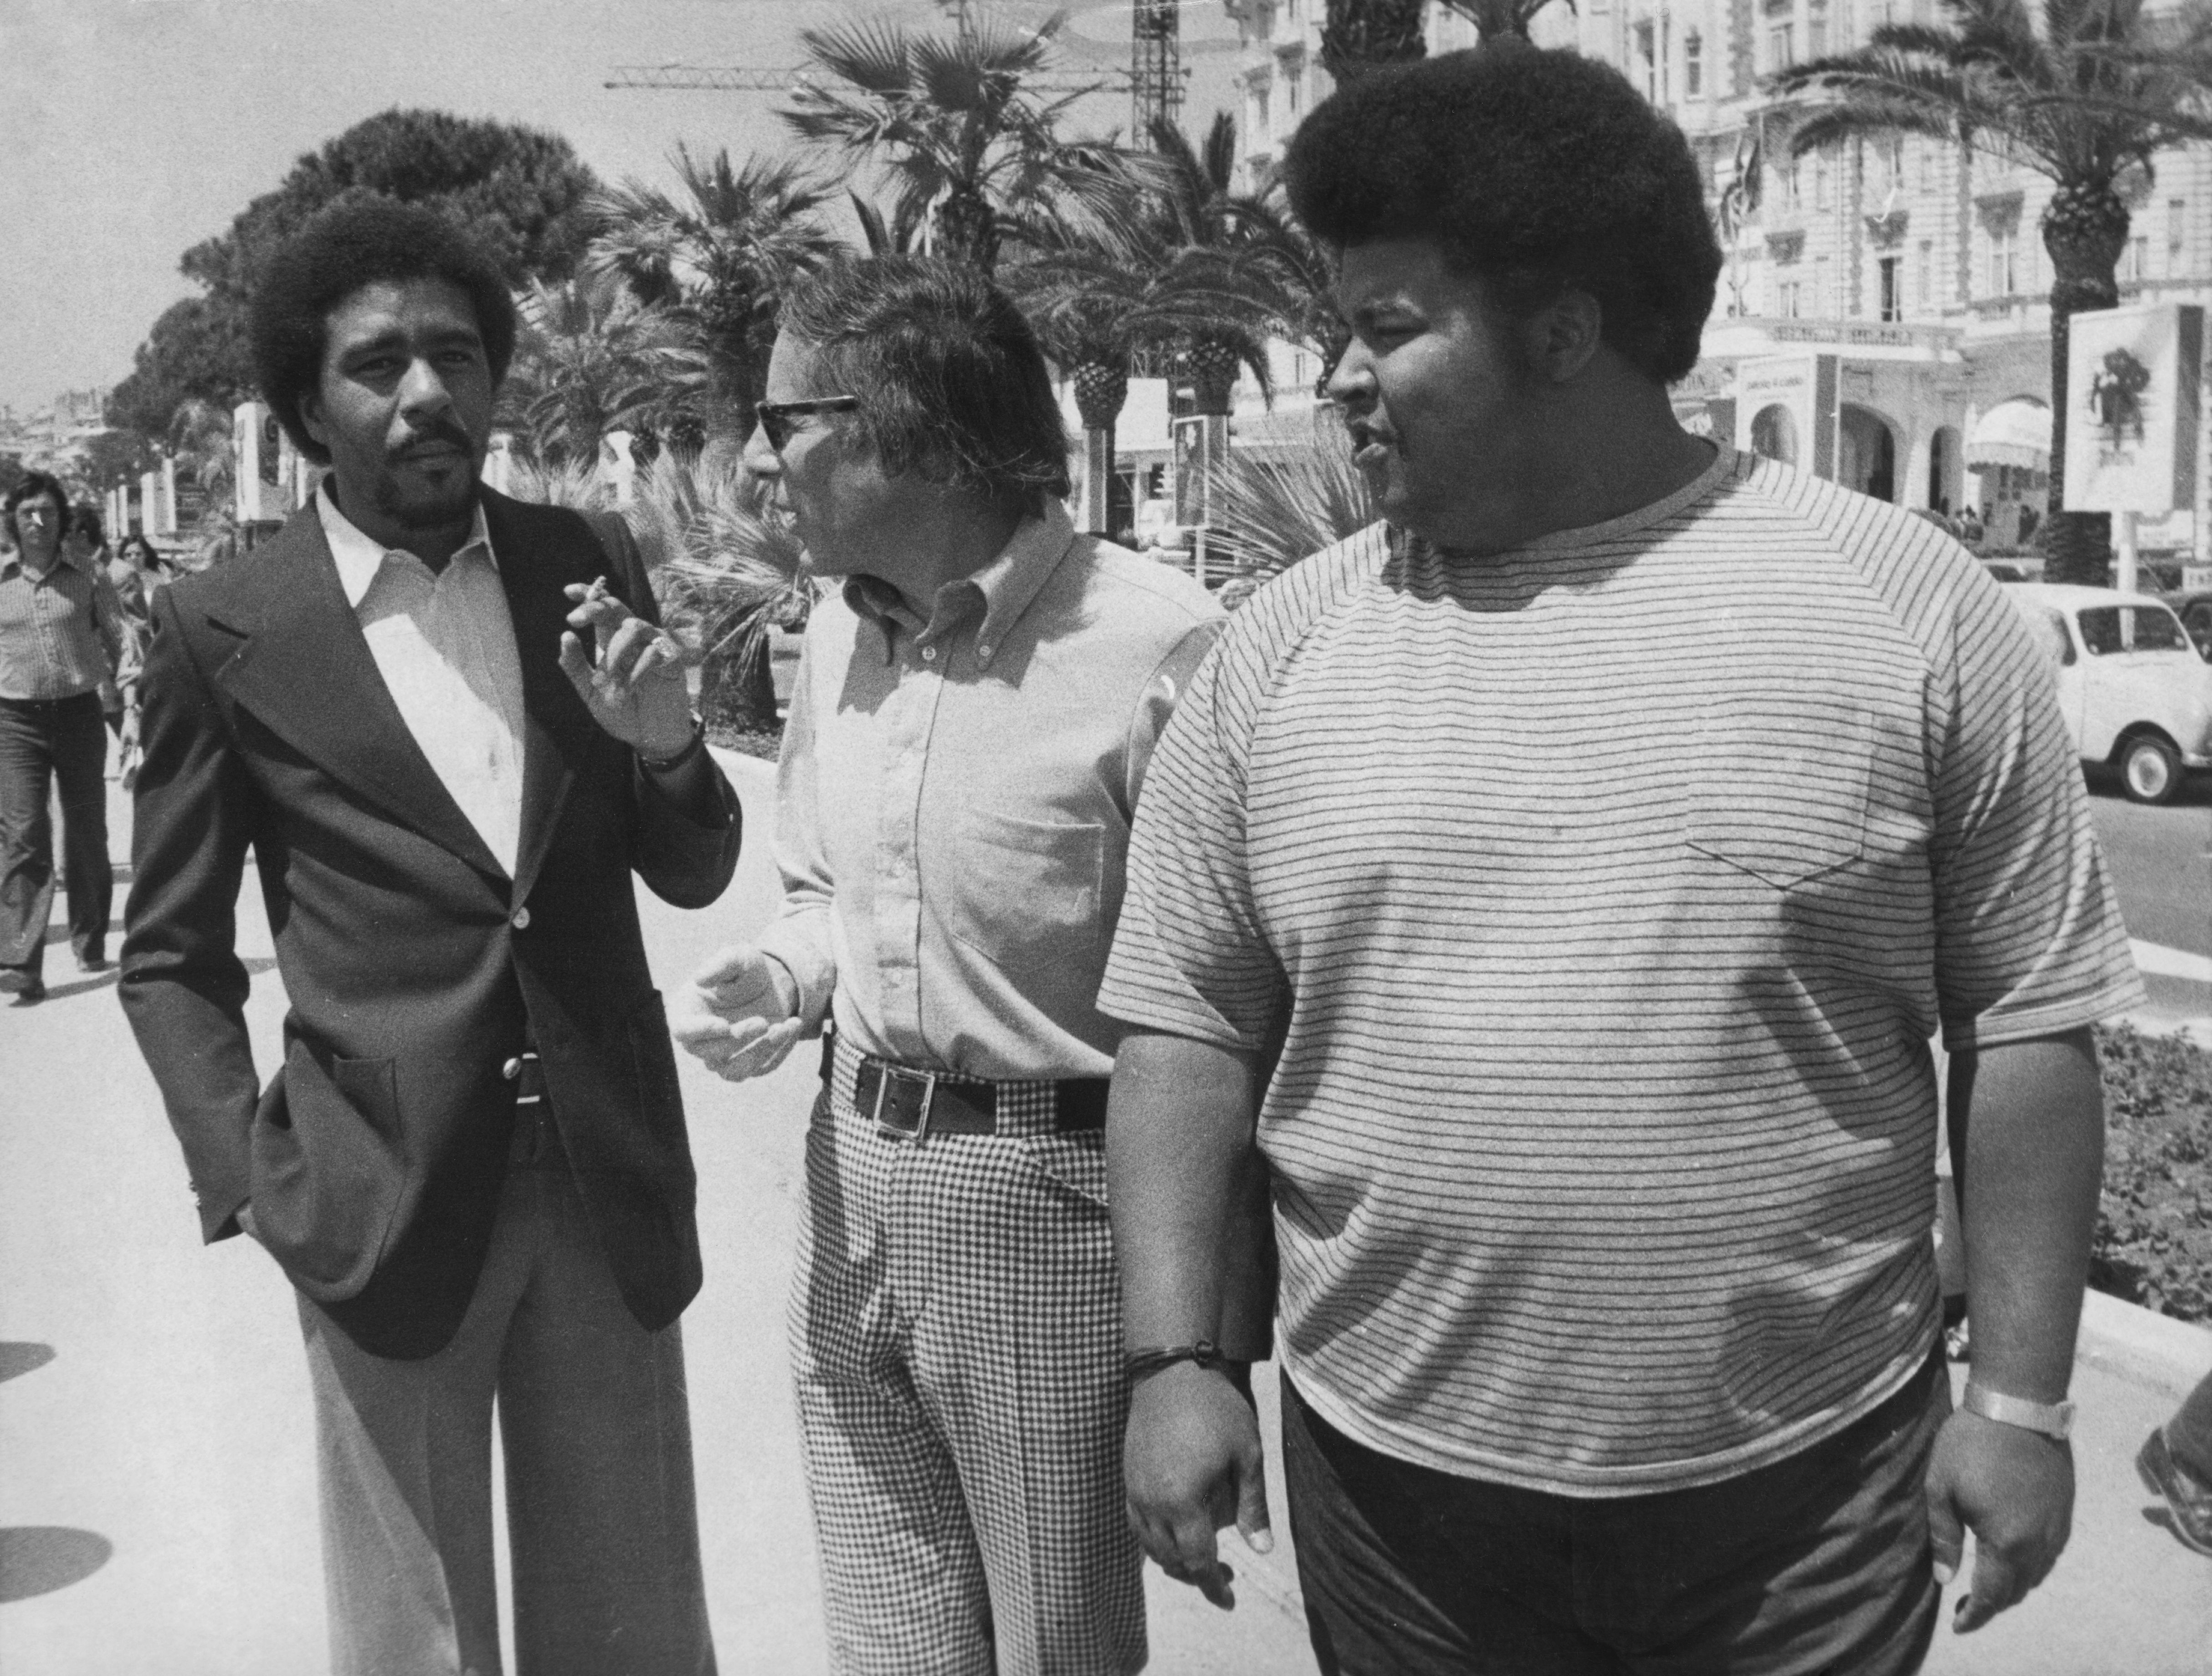 S lijeva na desno, glumac Richard Pryor, redatelj Mel Stuart i producent Forest Hamilton na Croisetti tijekom filmskog festivala u Cannesu u Francuskoj, gdje promoviraju svoj film